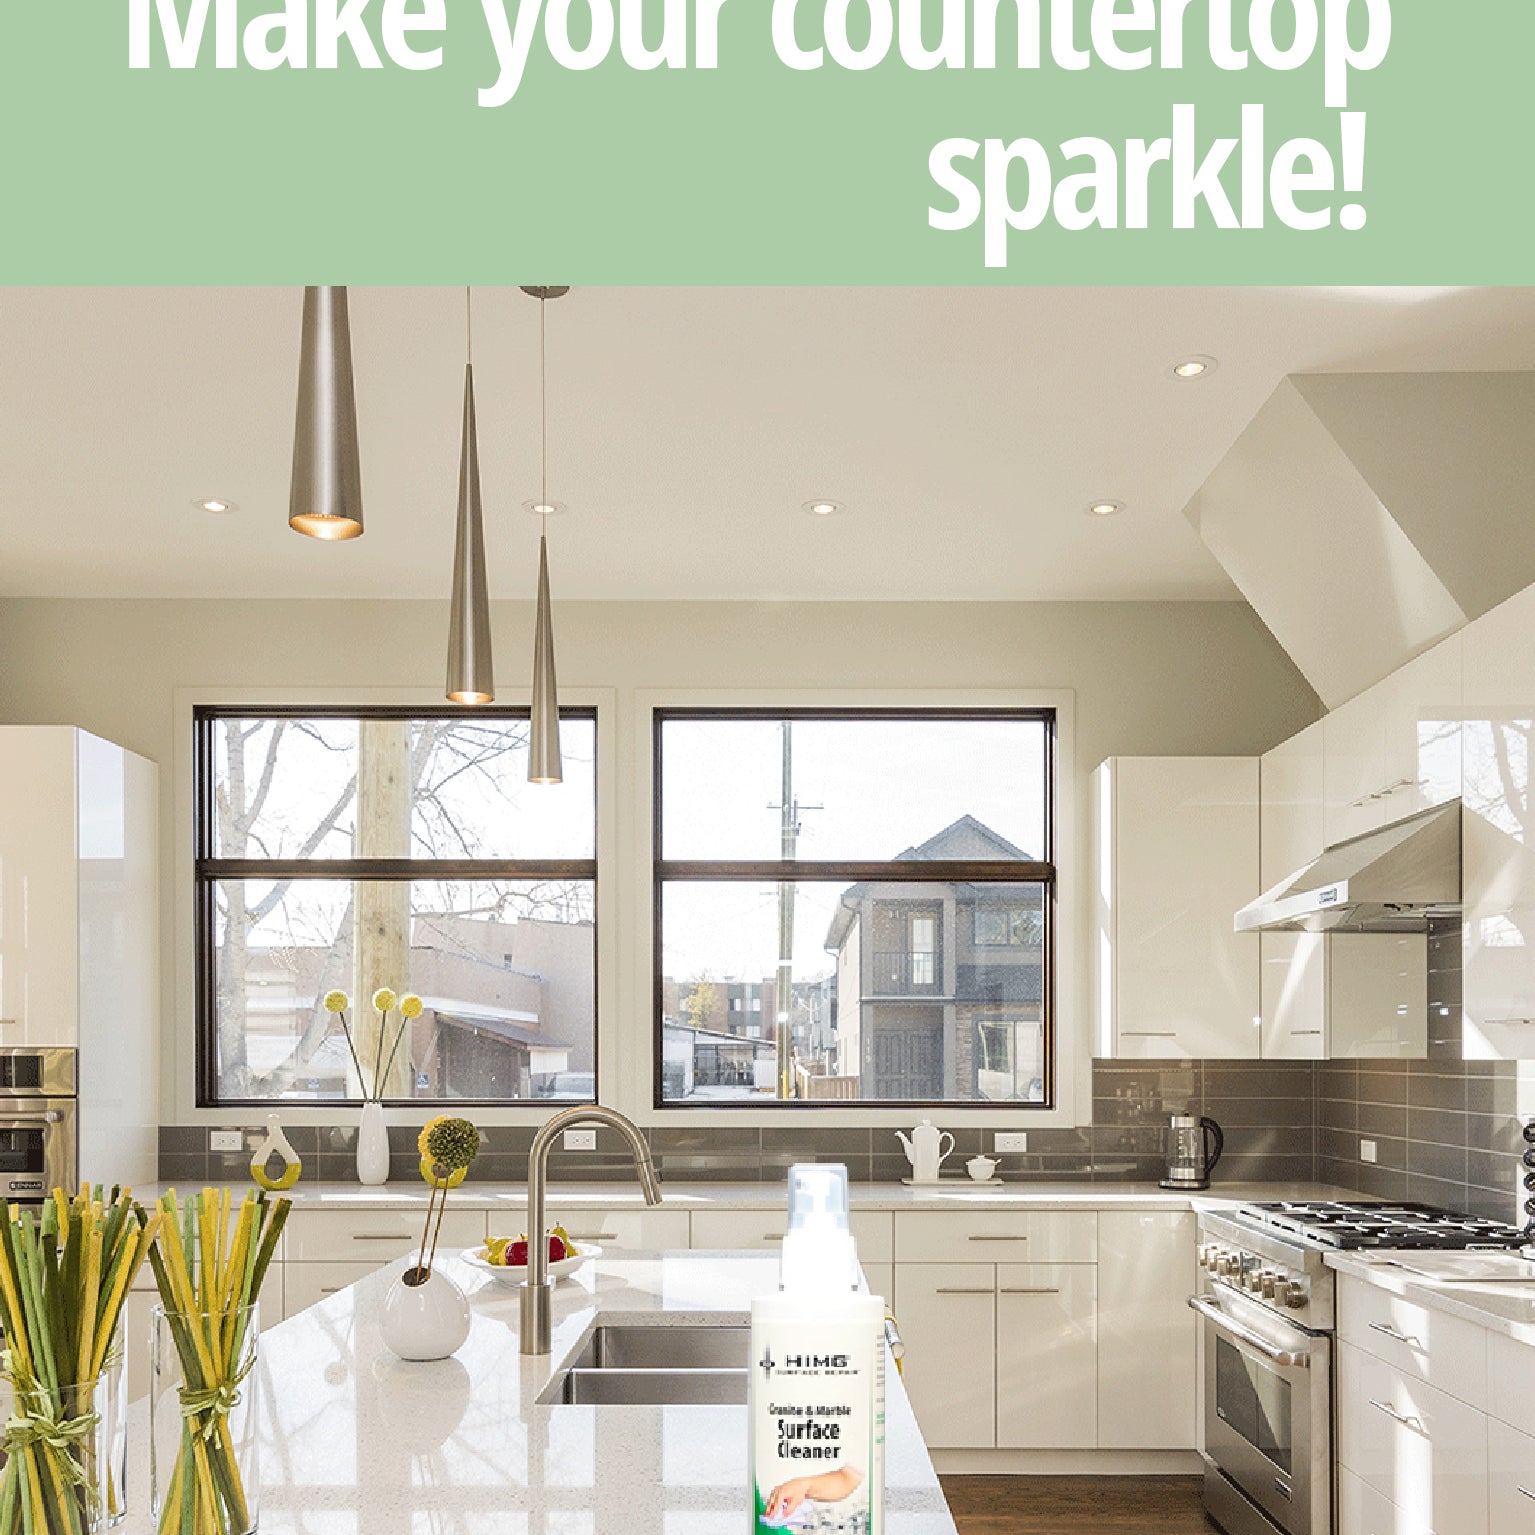 Make your countertop sparkle!